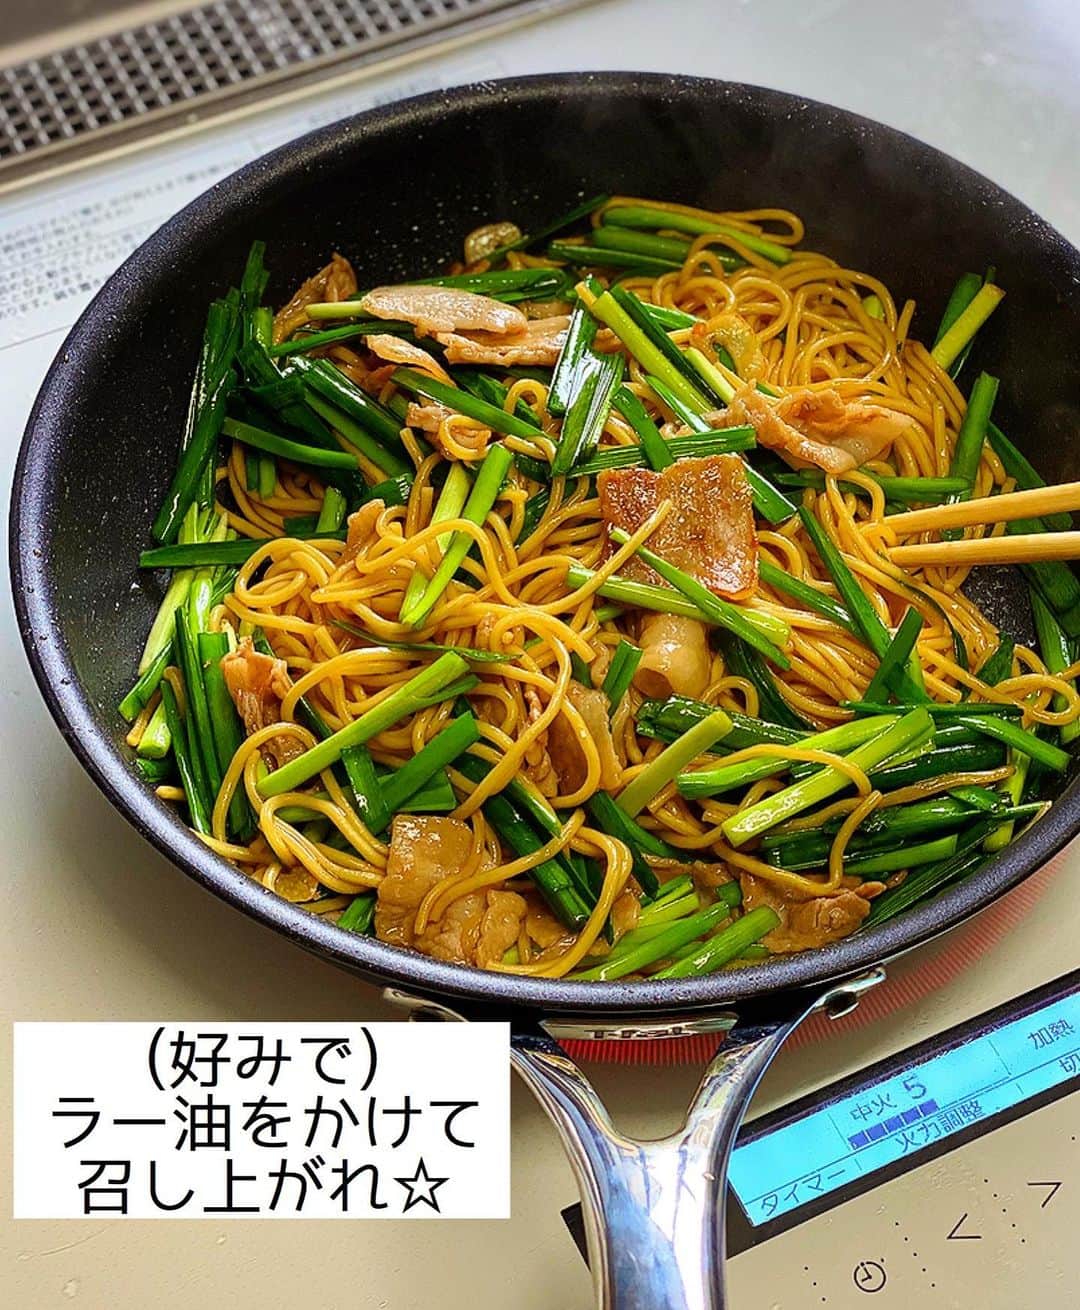 Mizuki【料理ブロガー・簡単レシピ】さんのインスタグラム写真 - (Mizuki【料理ブロガー・簡単レシピ】Instagram)「・﻿ 【レシピ】ーーーーーーーーー﻿ ♡黄金比率de上海焼きそば♡﻿ ーーーーーーーーーーーーーー﻿ ﻿ ﻿ ﻿ おはようございます(*^^*)﻿ ﻿ 今日は夏休みランチにも最適な﻿ ［上海焼きそば］のご紹介です♩﻿ オイスターソース×醤油の味付けで﻿ クセになる美味しさですよ〜♡﻿ ﻿ 作り方は超簡単(*´艸`)﻿ 具は豚肉×ニラのみ！﻿ 調味料は全同量の黄金比率で失敗なし！﻿ しかも5分程度でささっと作れて﻿ もちろんコスパも抜群です♡♡﻿ ﻿ ﻿ ﻿ ーーーーーーーーーーーーーーーーーーーー﻿ 【2人分】﻿ 焼きそば...2玉﻿ 豚バラ薄切り肉...100g﻿ ニラ...1束﻿ にんにく...1かけ﻿ ごま油...大1﻿ ●醤油・みりん・酒・オイスターソース...各大1﻿ (好みで)ラー油...適量﻿ ﻿ 1.豚肉とニラは4cm長さに切る。にんにくは薄切りにする。●は合わせておく。焼きそばは袋に一箇所穴を開け、600Wのレンジで2分加熱する。﻿ 2.フライパンにごま油とにんにくを入れて中火にかけ、豚肉を炒める。火が通ったら麺を加えてほぐすように炒め、●とニラを加えて炒め合わせる。﻿ 3.器に盛り、ラー油をかける。﻿ ーーーーーーーーーーーーーーーーーーーー﻿ ﻿ ﻿ ﻿ 《ポイント》﻿ ♦︎麺はレンチンしておくとほぐれやすくなります♩﻿ ♦︎にんにくがなければチューブ(3cmくらい)で代用可！合わせ調味料の中に加えて下さい♩﻿ ♦︎このレシピは2015年にブログでご紹介しています♩﻿ ﻿ ﻿ ﻿ ﻿ ﻿ ﻿ ﻿ ＿＿＿＿＿＿＿＿＿＿＿＿＿＿＿＿＿﻿ 🎀6刷重版しました🎀﻿ 混ぜて焼くだけ。はじめてでも失敗しない！﻿ 【#ホットケーキミックスのお菓子 】﻿ ﻿ 一冊まるっとホケミスイーツ♩﻿ 普段のおやつから﻿ 特別な日にも使えるレシピを﻿ この一冊に詰め込みました(*^^*)﻿ ホットケーキミックスを使えば﻿ 簡単に本格的なお菓子が作れますよ♡﻿ ＿＿＿＿＿＿＿＿＿＿＿＿＿＿＿＿＿﻿ ﻿ ﻿ ﻿ ＿＿＿＿＿＿＿＿＿＿＿＿＿＿＿＿＿＿＿﻿ 📕6刷重版しました📕﻿ 簡単・時短！ 毎日のごはんがラクになる﻿ ✨🦋 【 #Mizukiの今どき和食 】🦋✨﻿ ＿＿＿＿＿＿＿＿＿＿＿＿＿＿＿＿＿＿＿﻿ なるべく少ない材料で﻿ 手間も時間も省きながら﻿ 簡単にできるおいしい和食レシピ♩﻿ 簡単に失敗なくマスターできる一冊で﻿ もっと気軽に、カジュアルに﻿ 和食を楽しんで下さいね(*^^*)﻿ ＿＿＿＿＿＿＿＿＿＿＿＿＿＿＿＿＿＿＿﻿ ﻿ ⭐️ストーリー、ハイライト、プロフ画面に﻿ 本のURLを貼らせていただいております♩﻿ →(@mizuki_31cafe )﻿ ﻿ ﻿ ﻿ ﻿ ﻿ #焼きそば#ランチ#豚肉#ニラ#麺#コスパ#Mizuki#簡単レシピ#時短レシピ#節約レシピ#料理#レシピ#フーディーテーブル#マカロニメイト#おうちごはん#デリスタグラマー#料理好きな人と繋がりたい#おうちごはんlover#写真好きな人と繋がりたい#foodpic#cooking#recipe#lin_stagrammer#foodporn#yummy#上海焼きそばm」8月3日 7時00分 - mizuki_31cafe